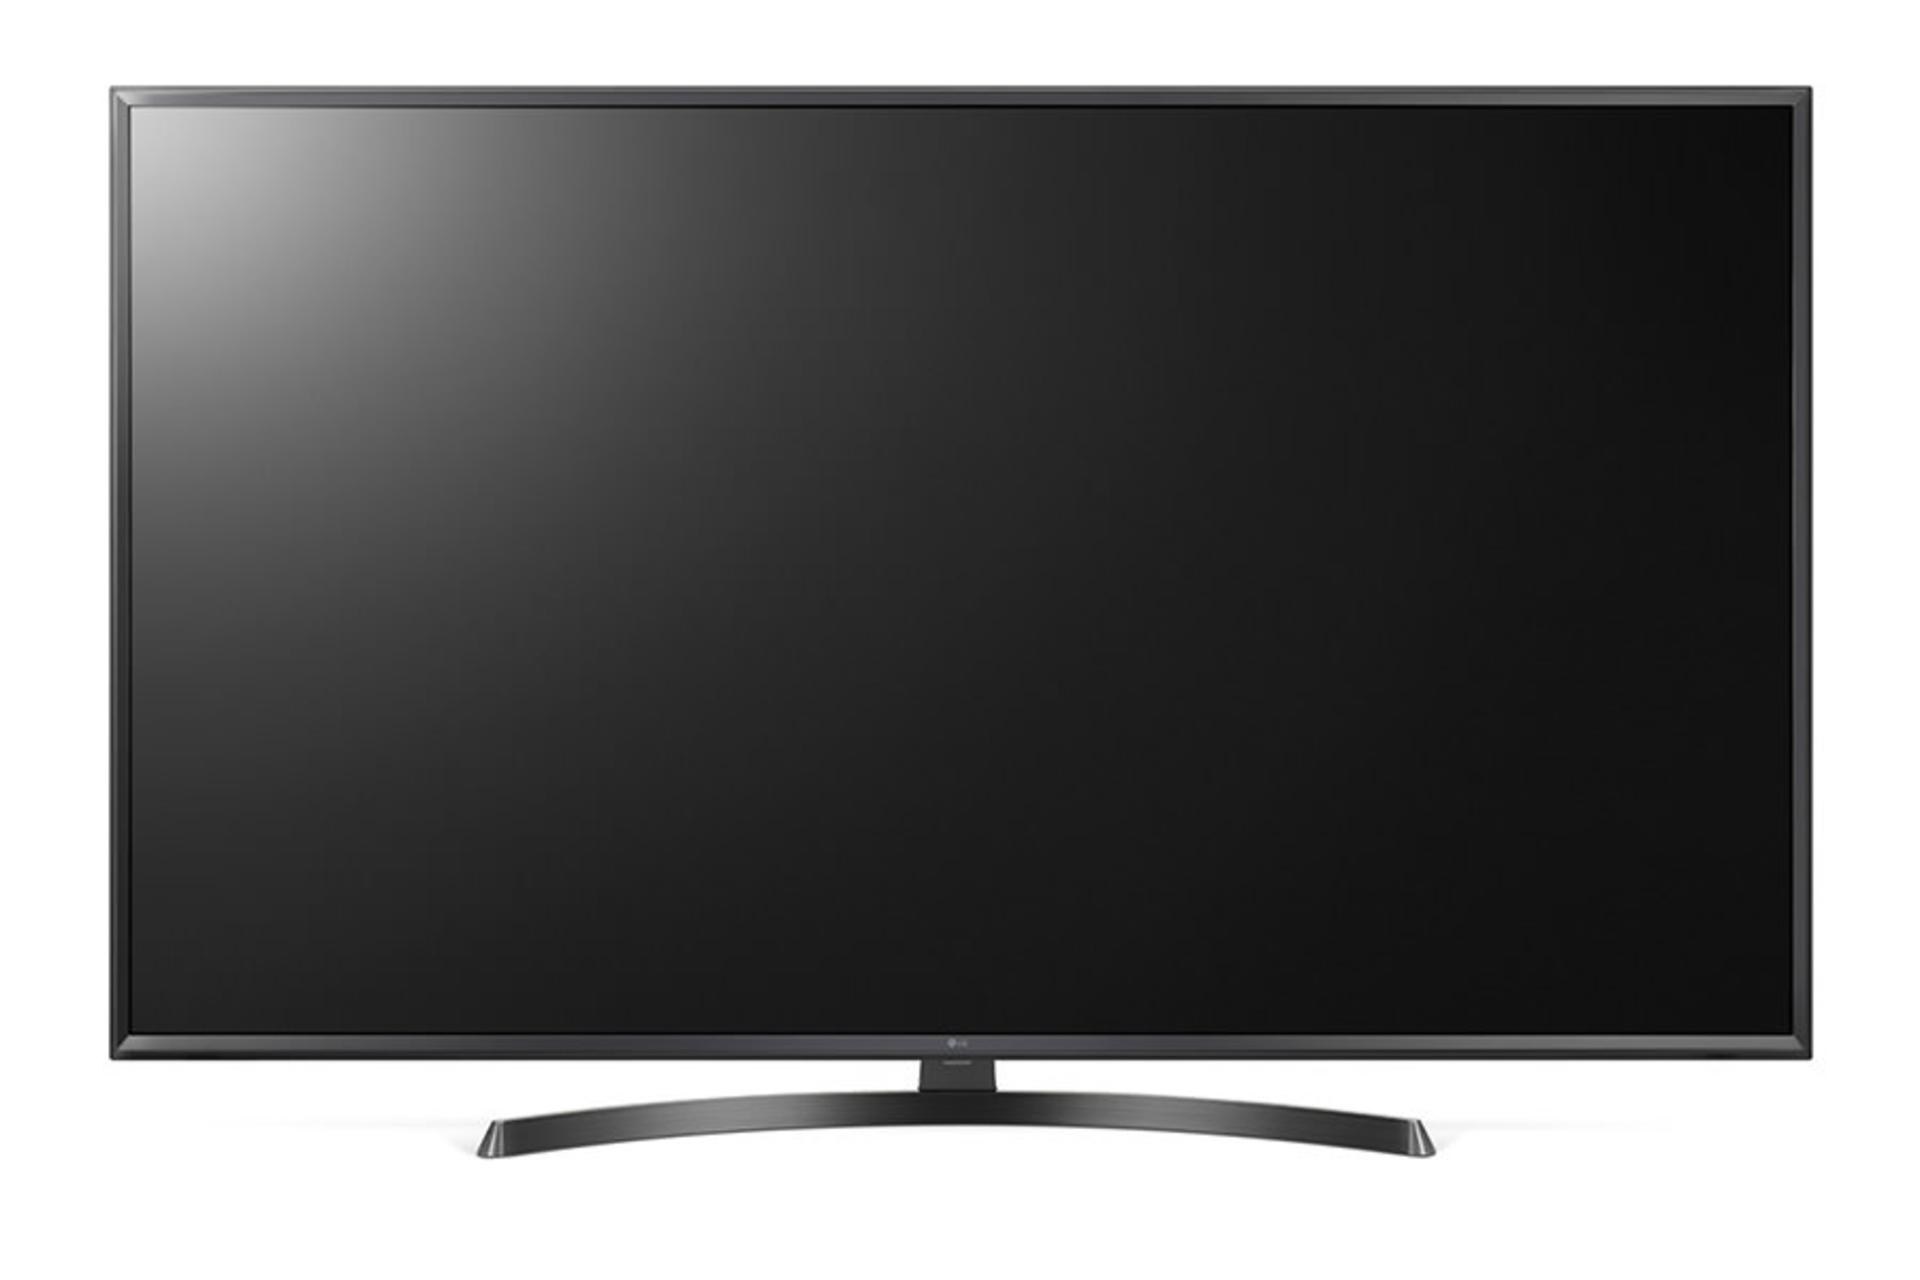 نمای جلو تلویزیون ال جی UK6400 مدل 49 اینچ با صفحه خاموش